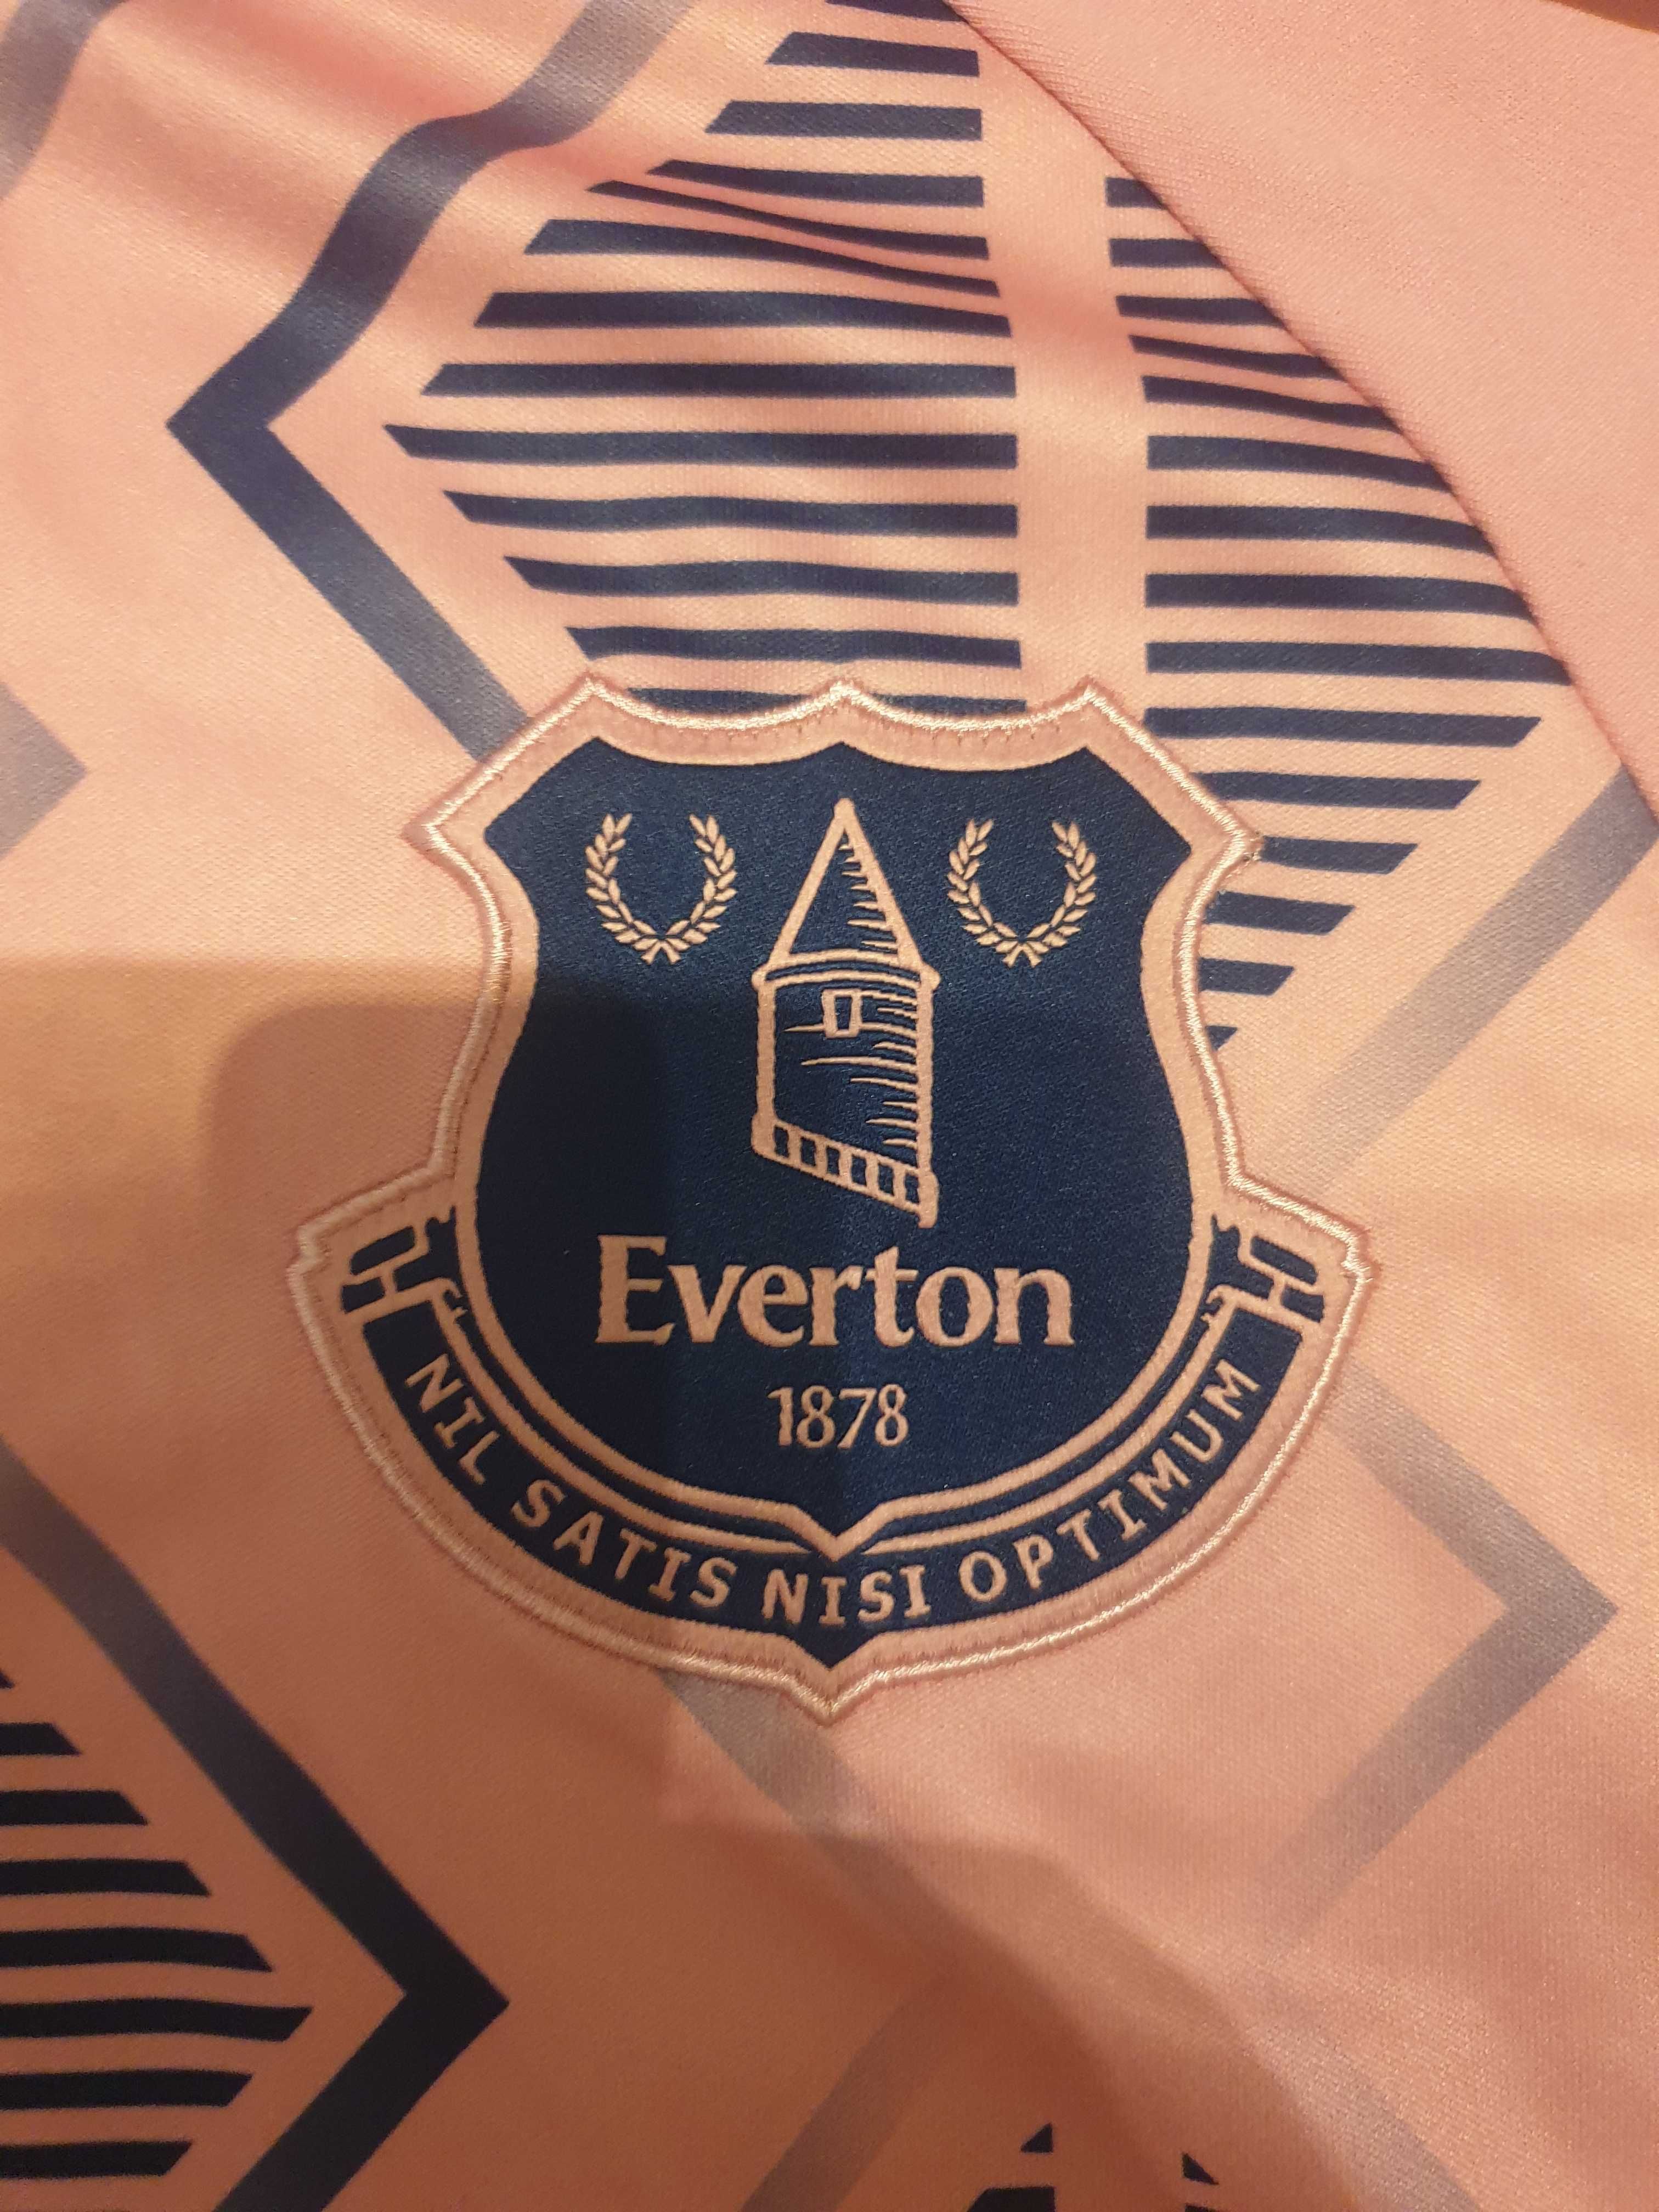 Koszulka piłkarska Everton używana w bardzo dobrym stanie